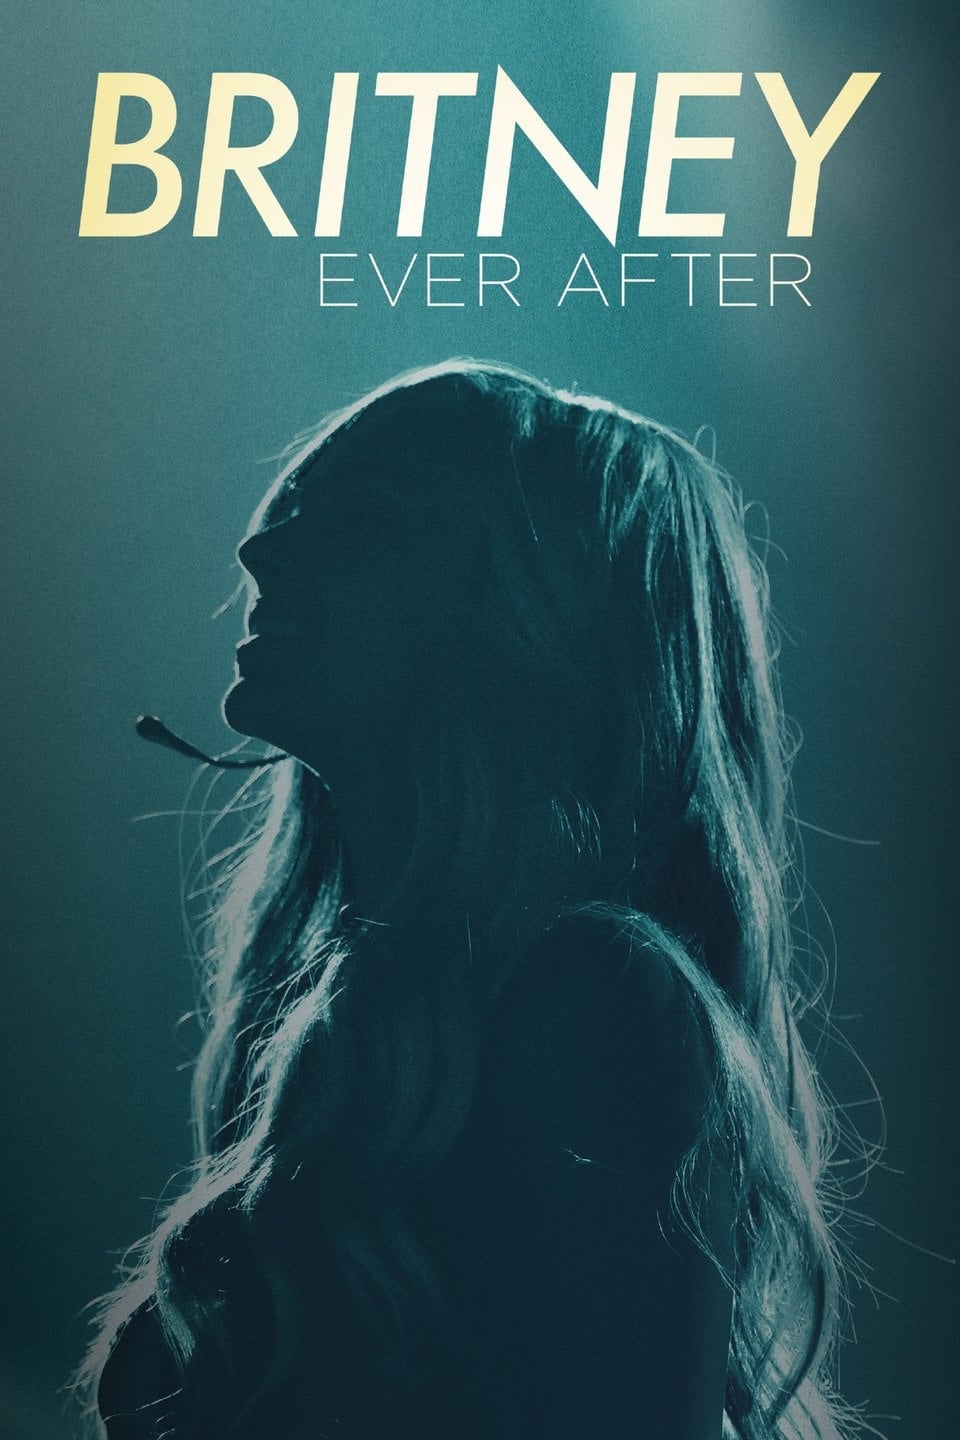 Britney Ever After (2017)